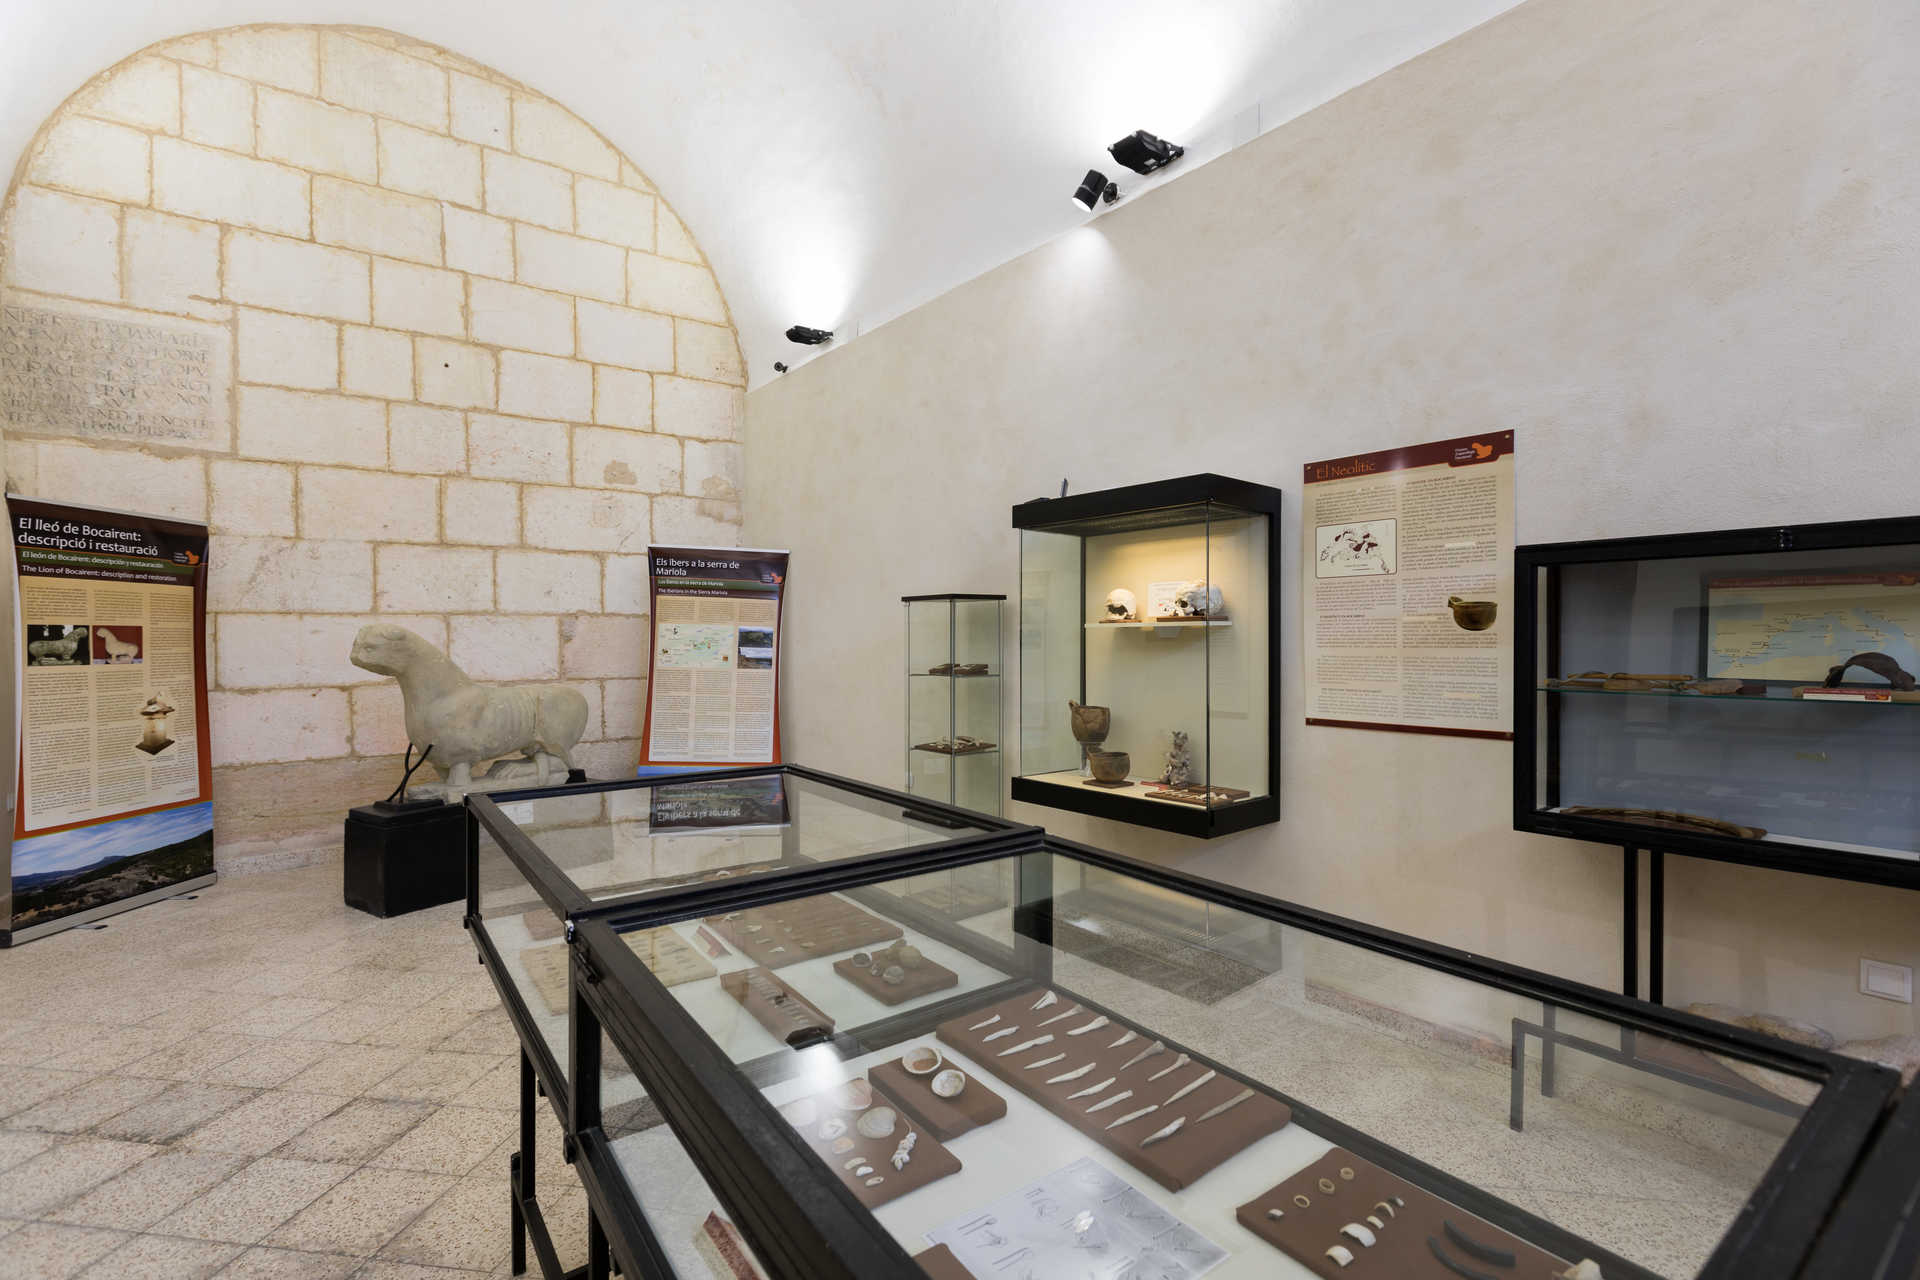 Museu Arqueològic Municipal